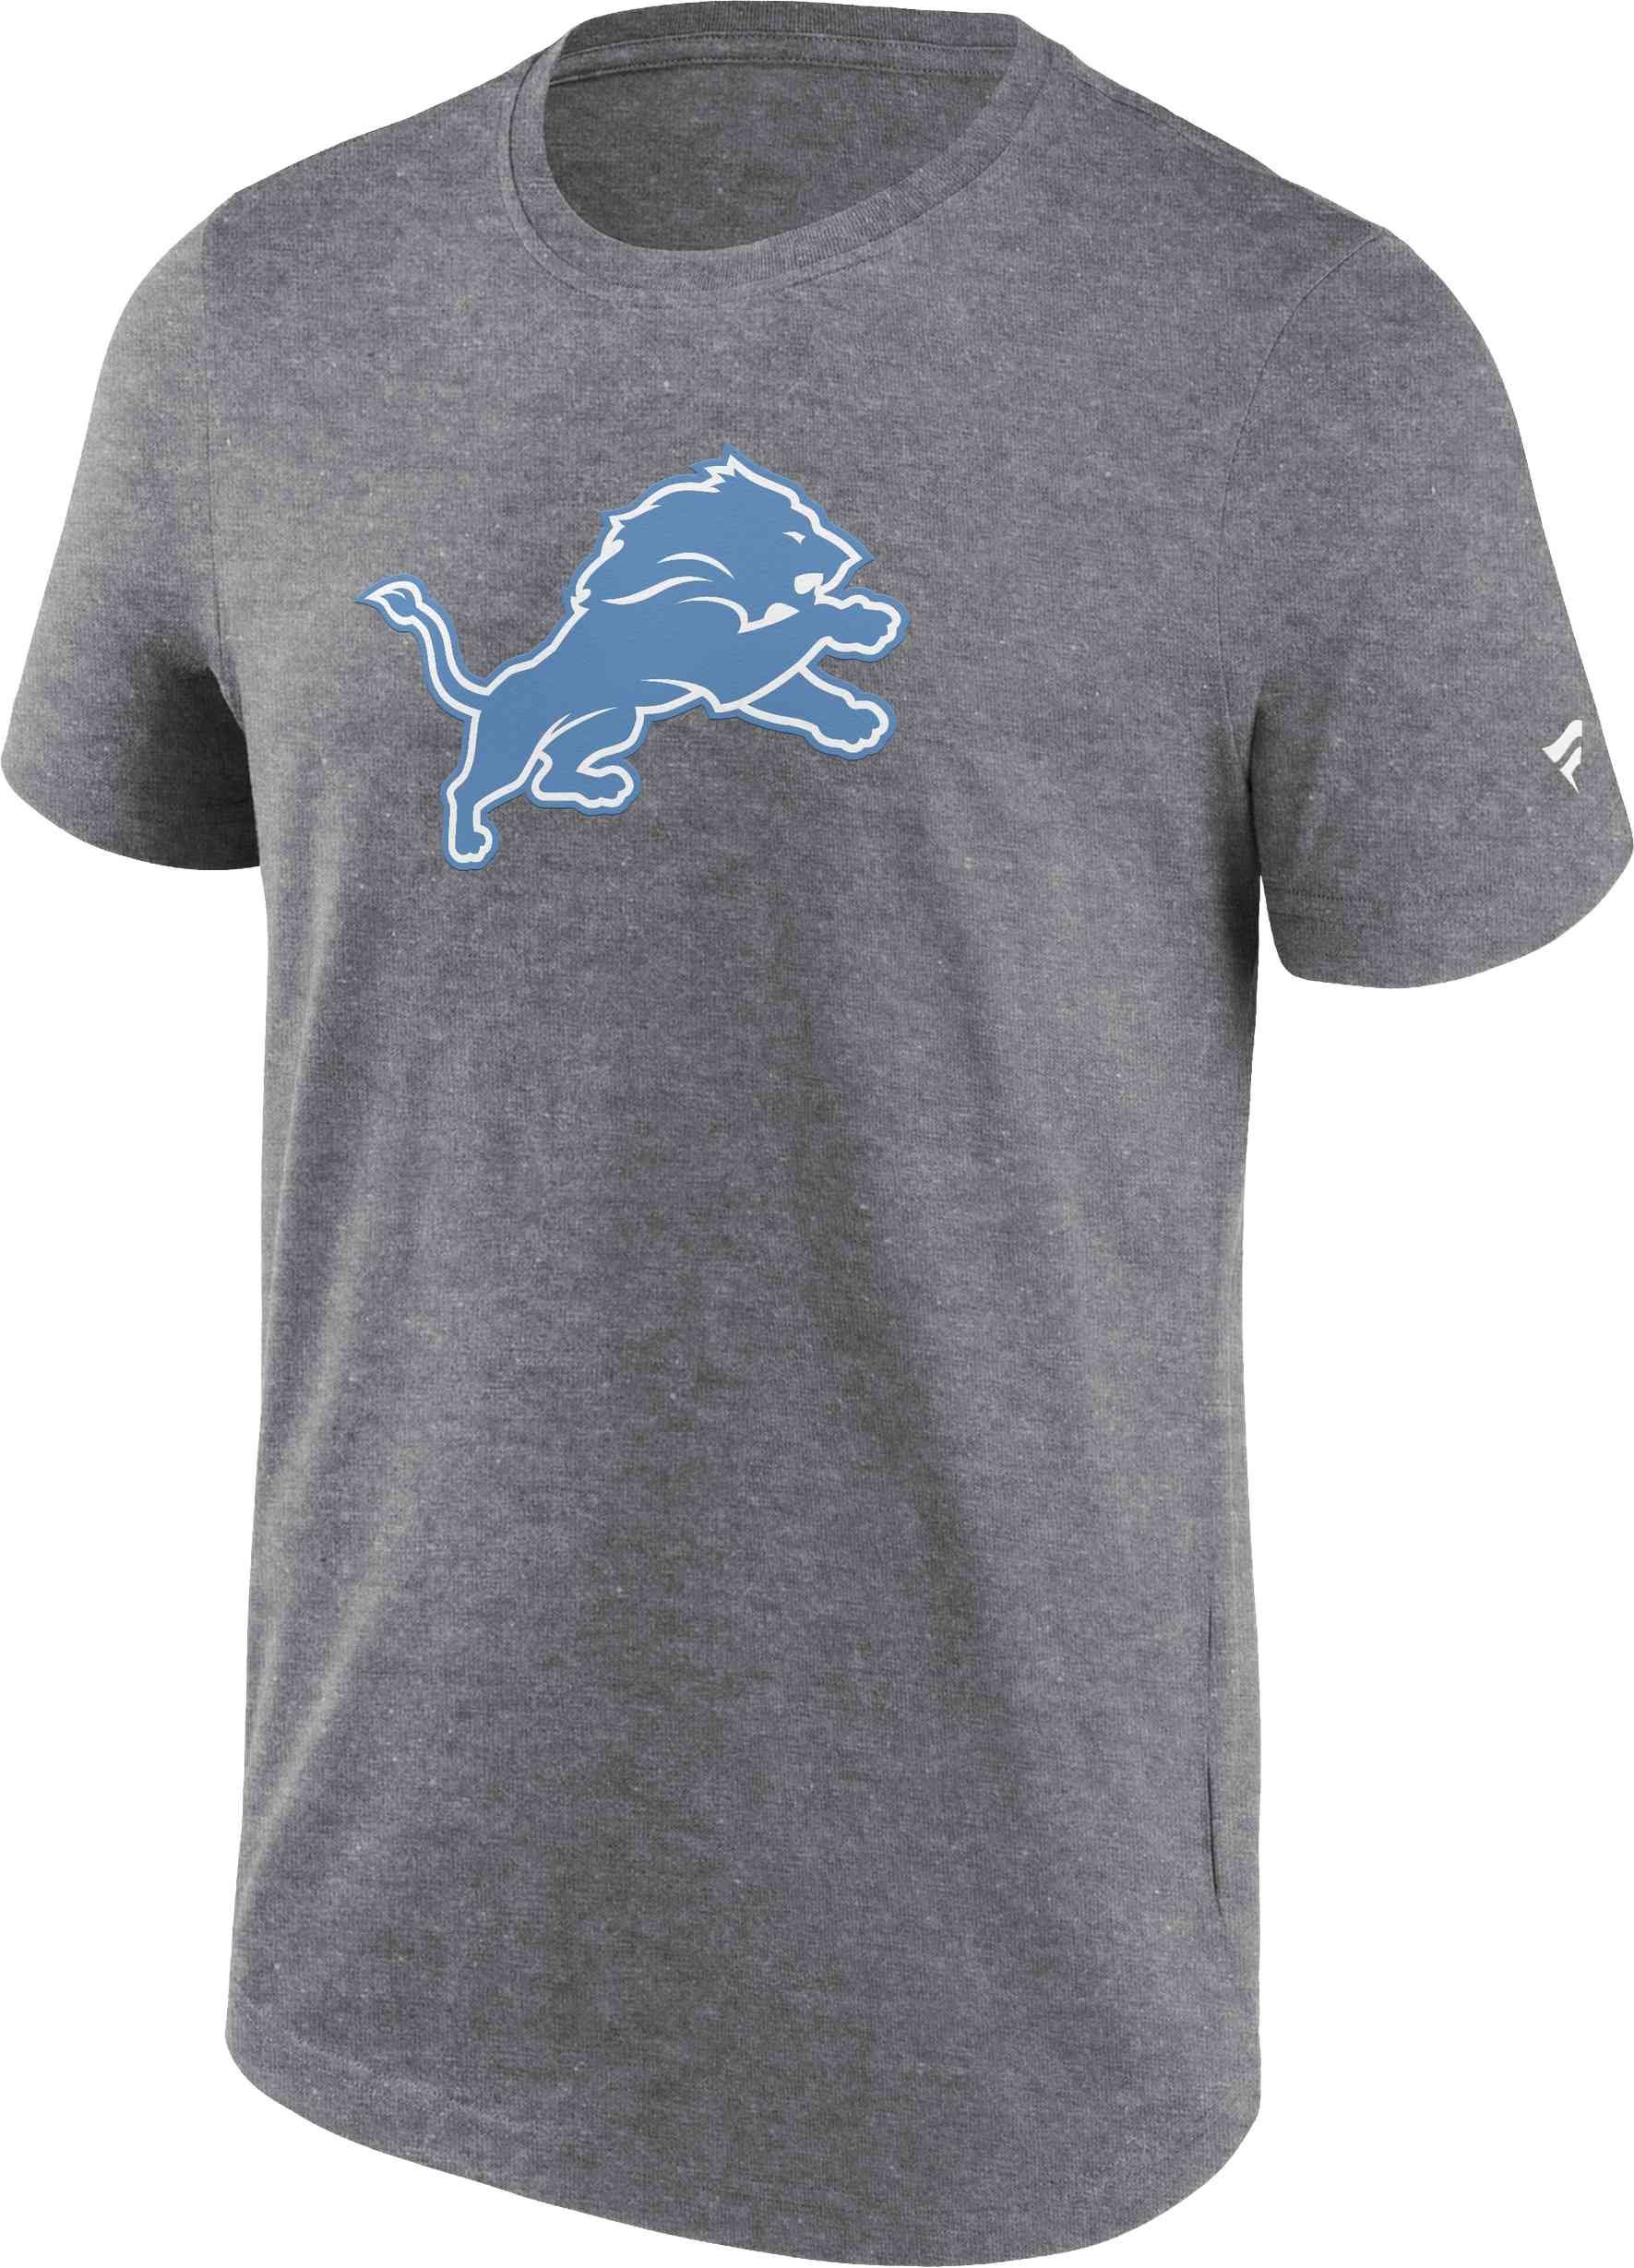 Fanatics T-Shirt NFL Detroit Lions Primary Logo Graphic